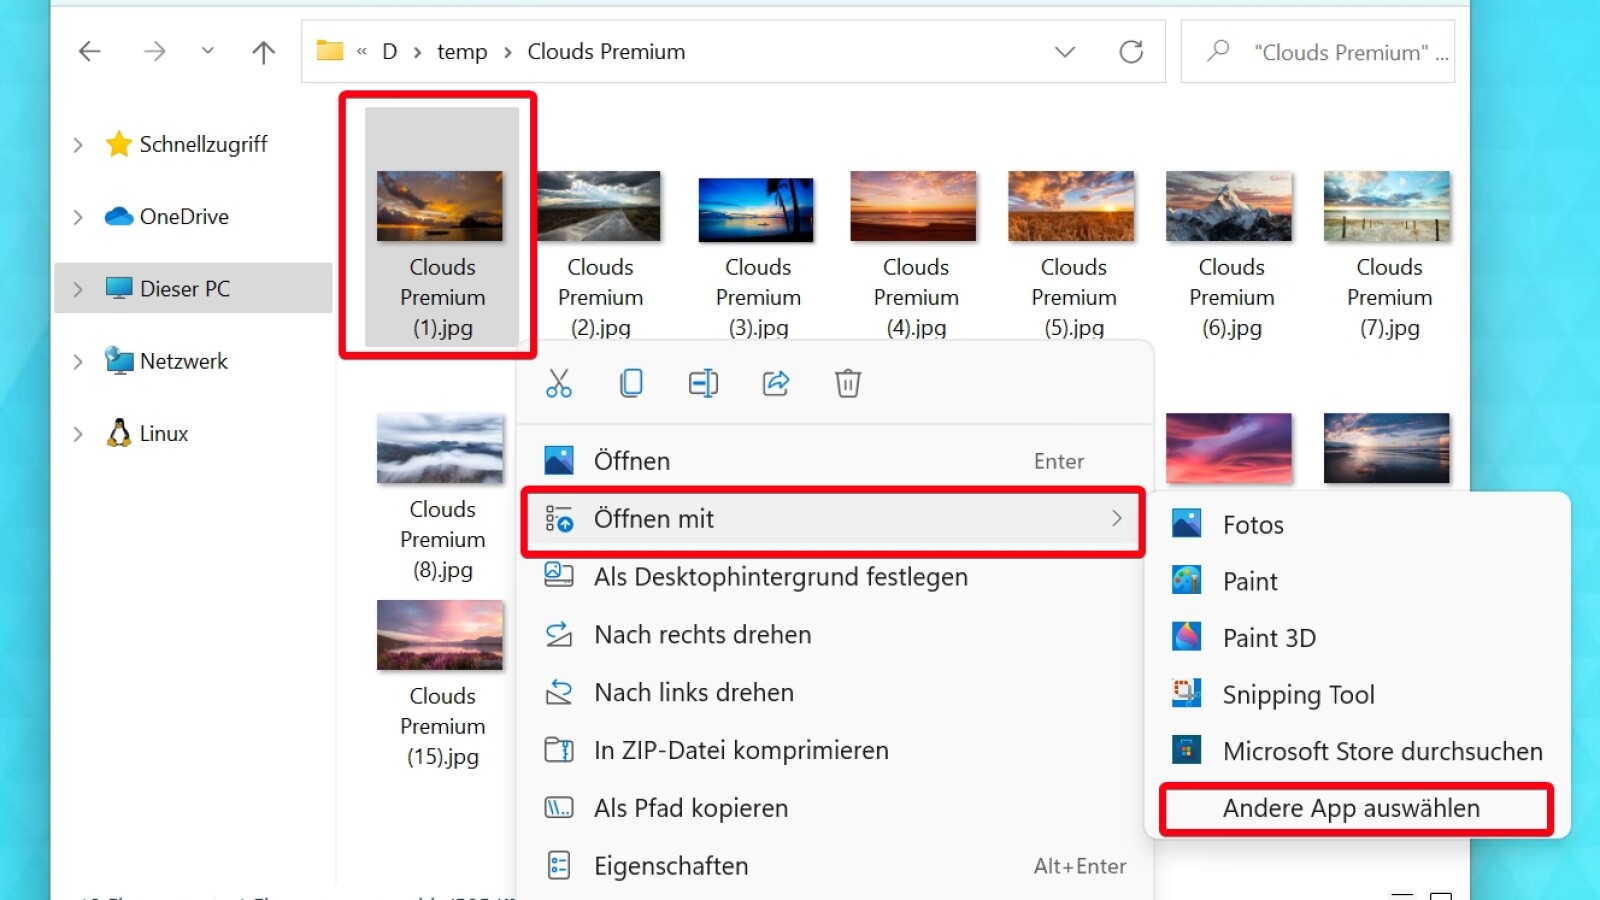 Windows 11: Netzschaltereinstellungen festlegen